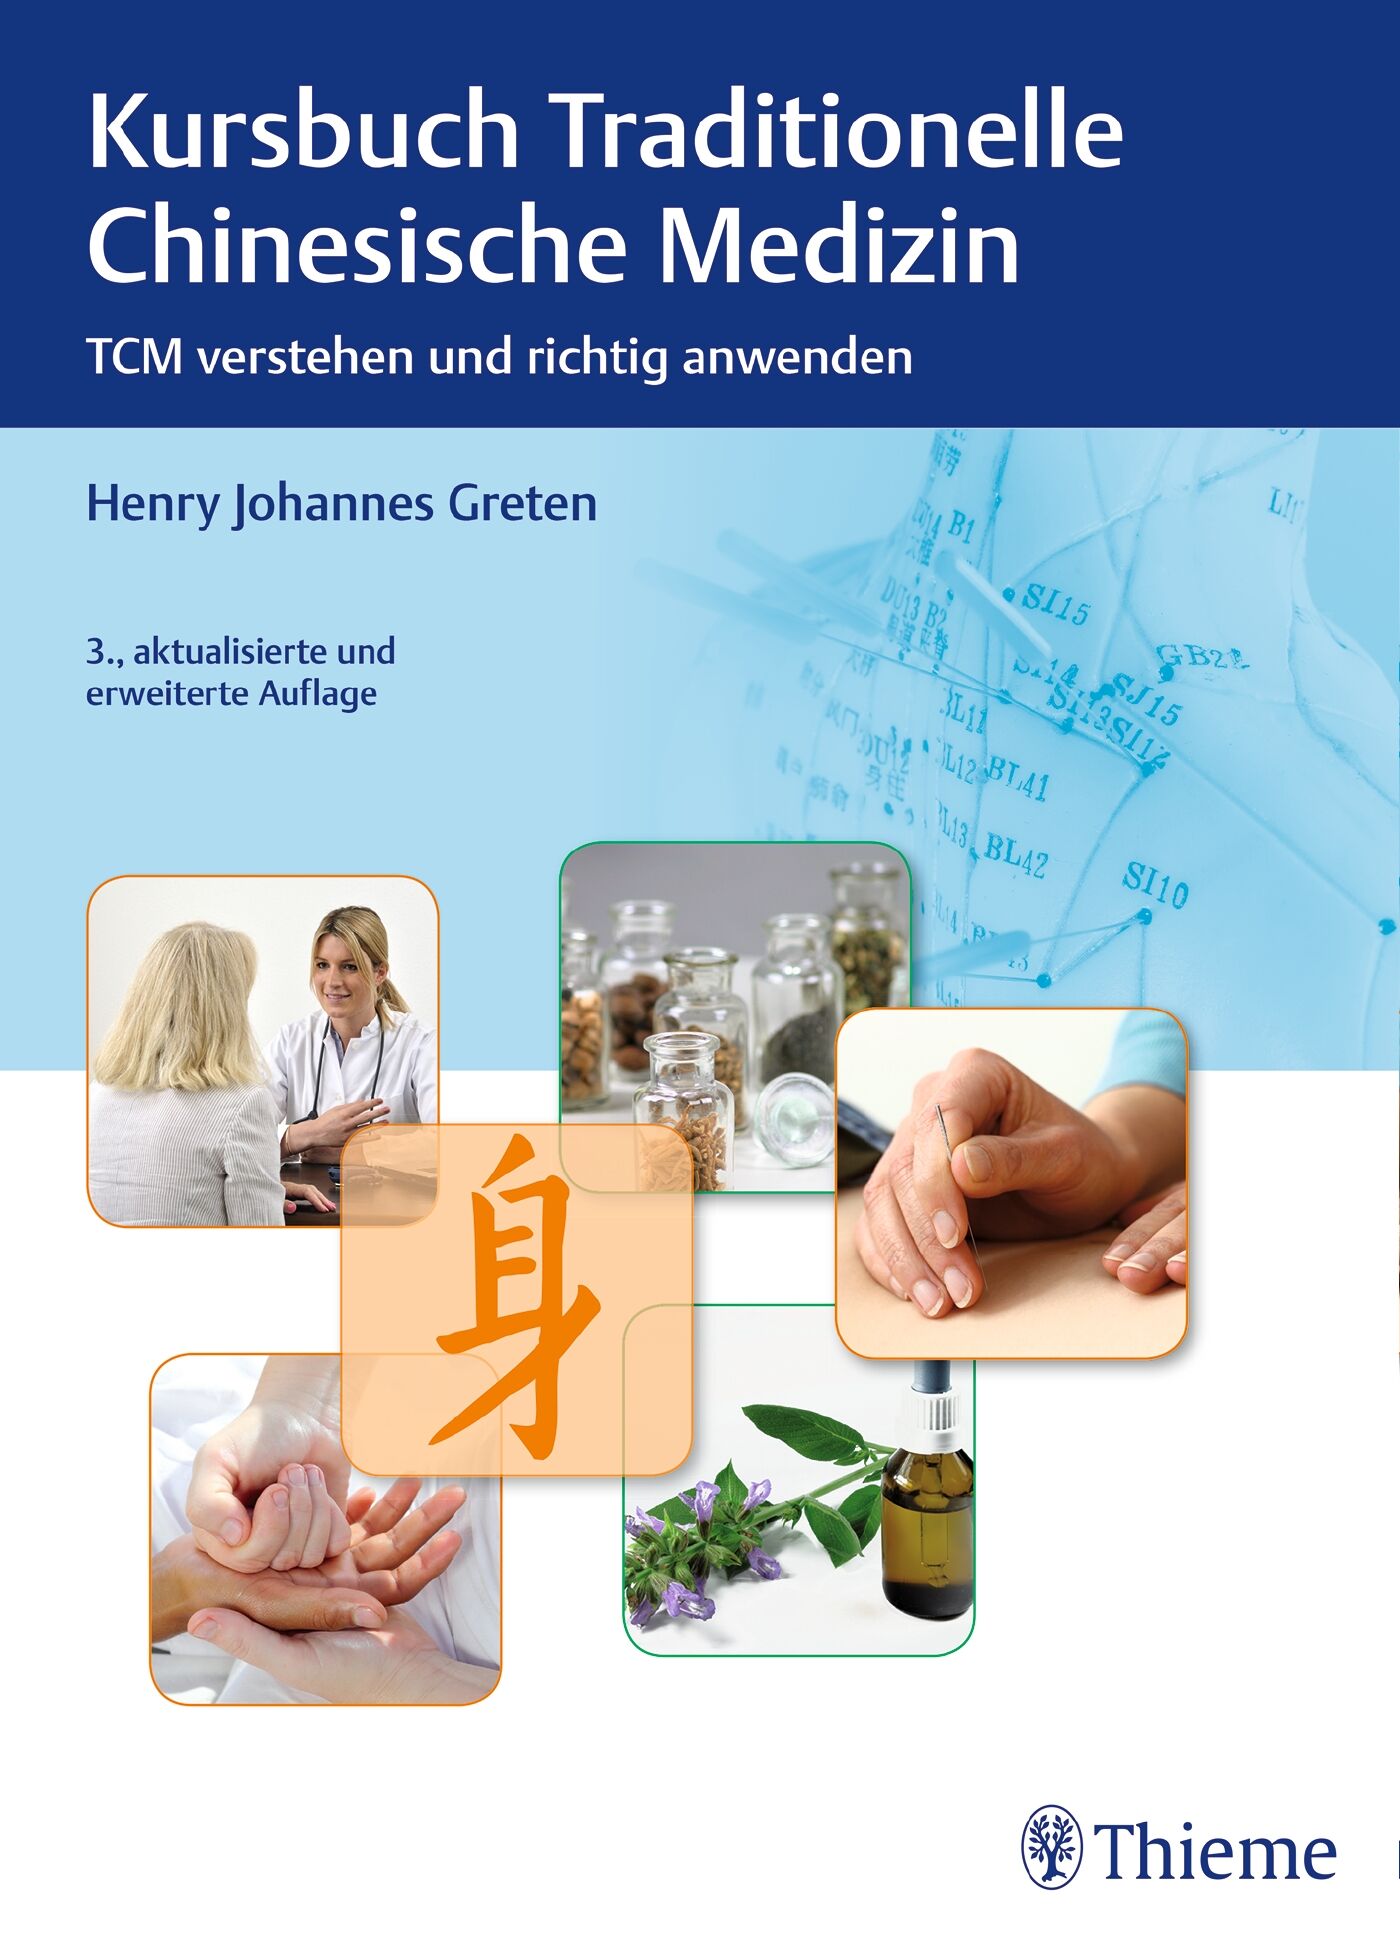 Kursbuch Traditionelle Chinesische Medizin, 9783132035331